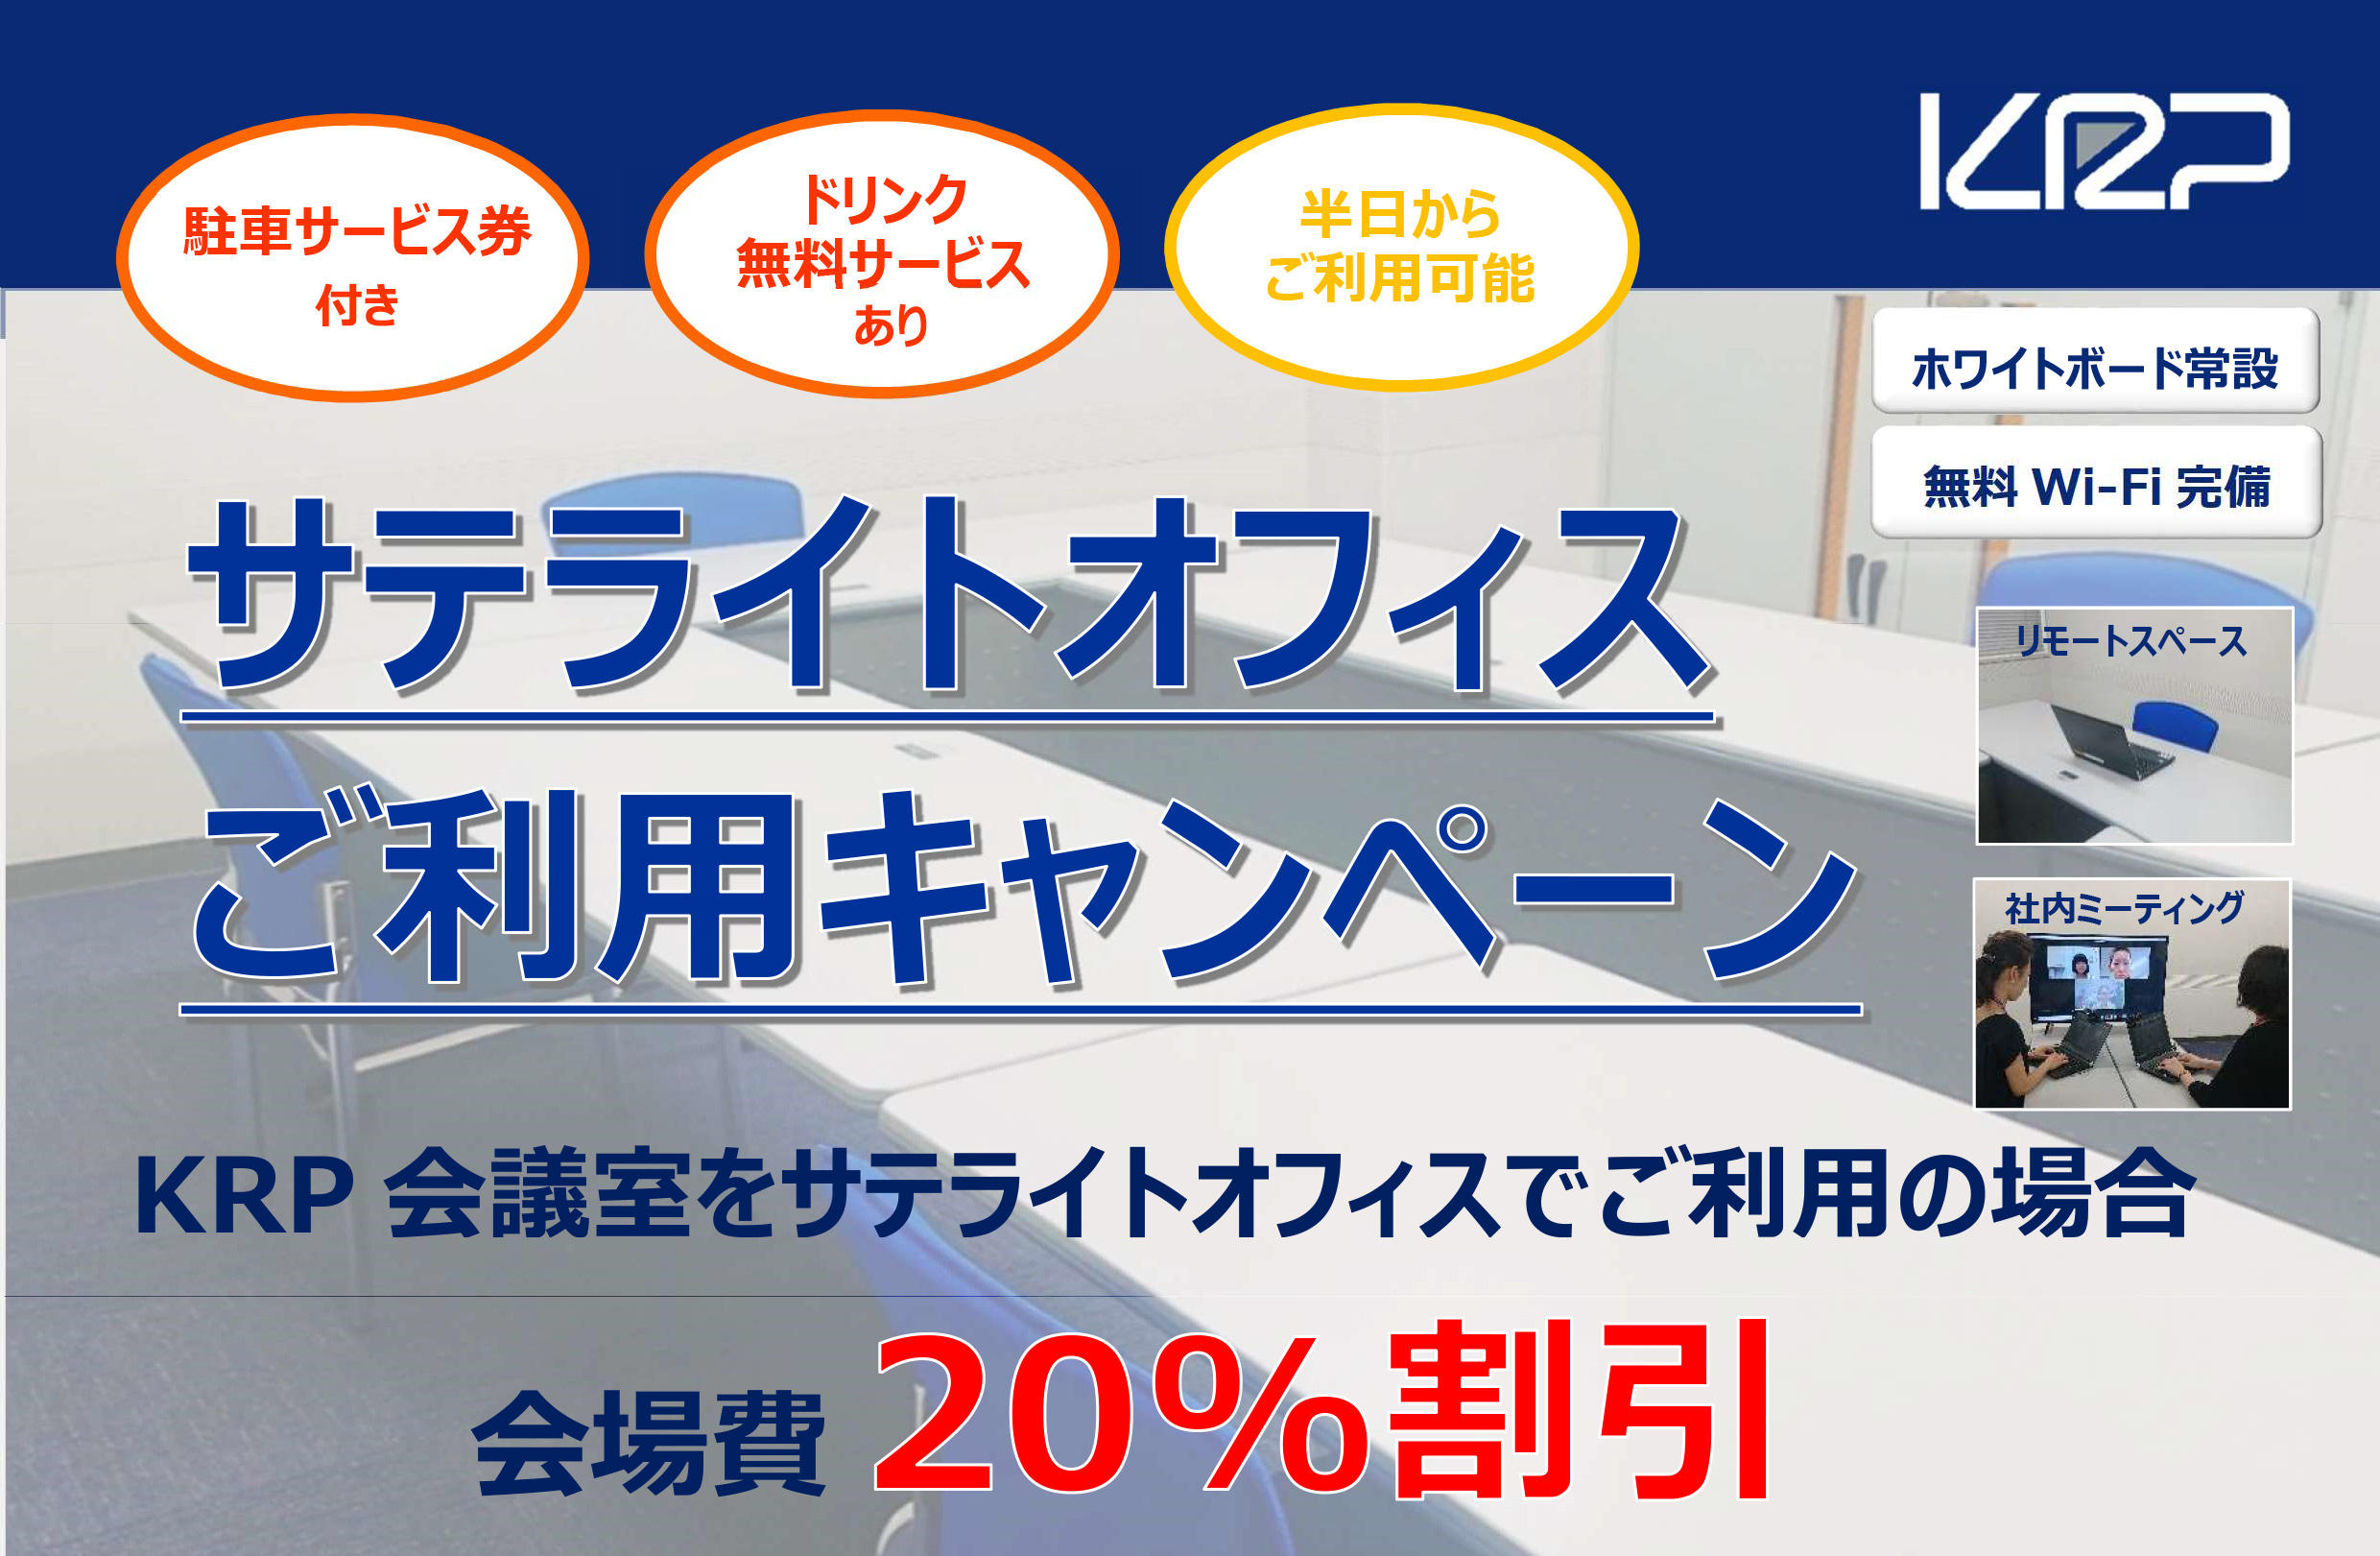 【京都リサーチパーク会議室】「サテライトオフィスご利用キャンペーン」のご案内